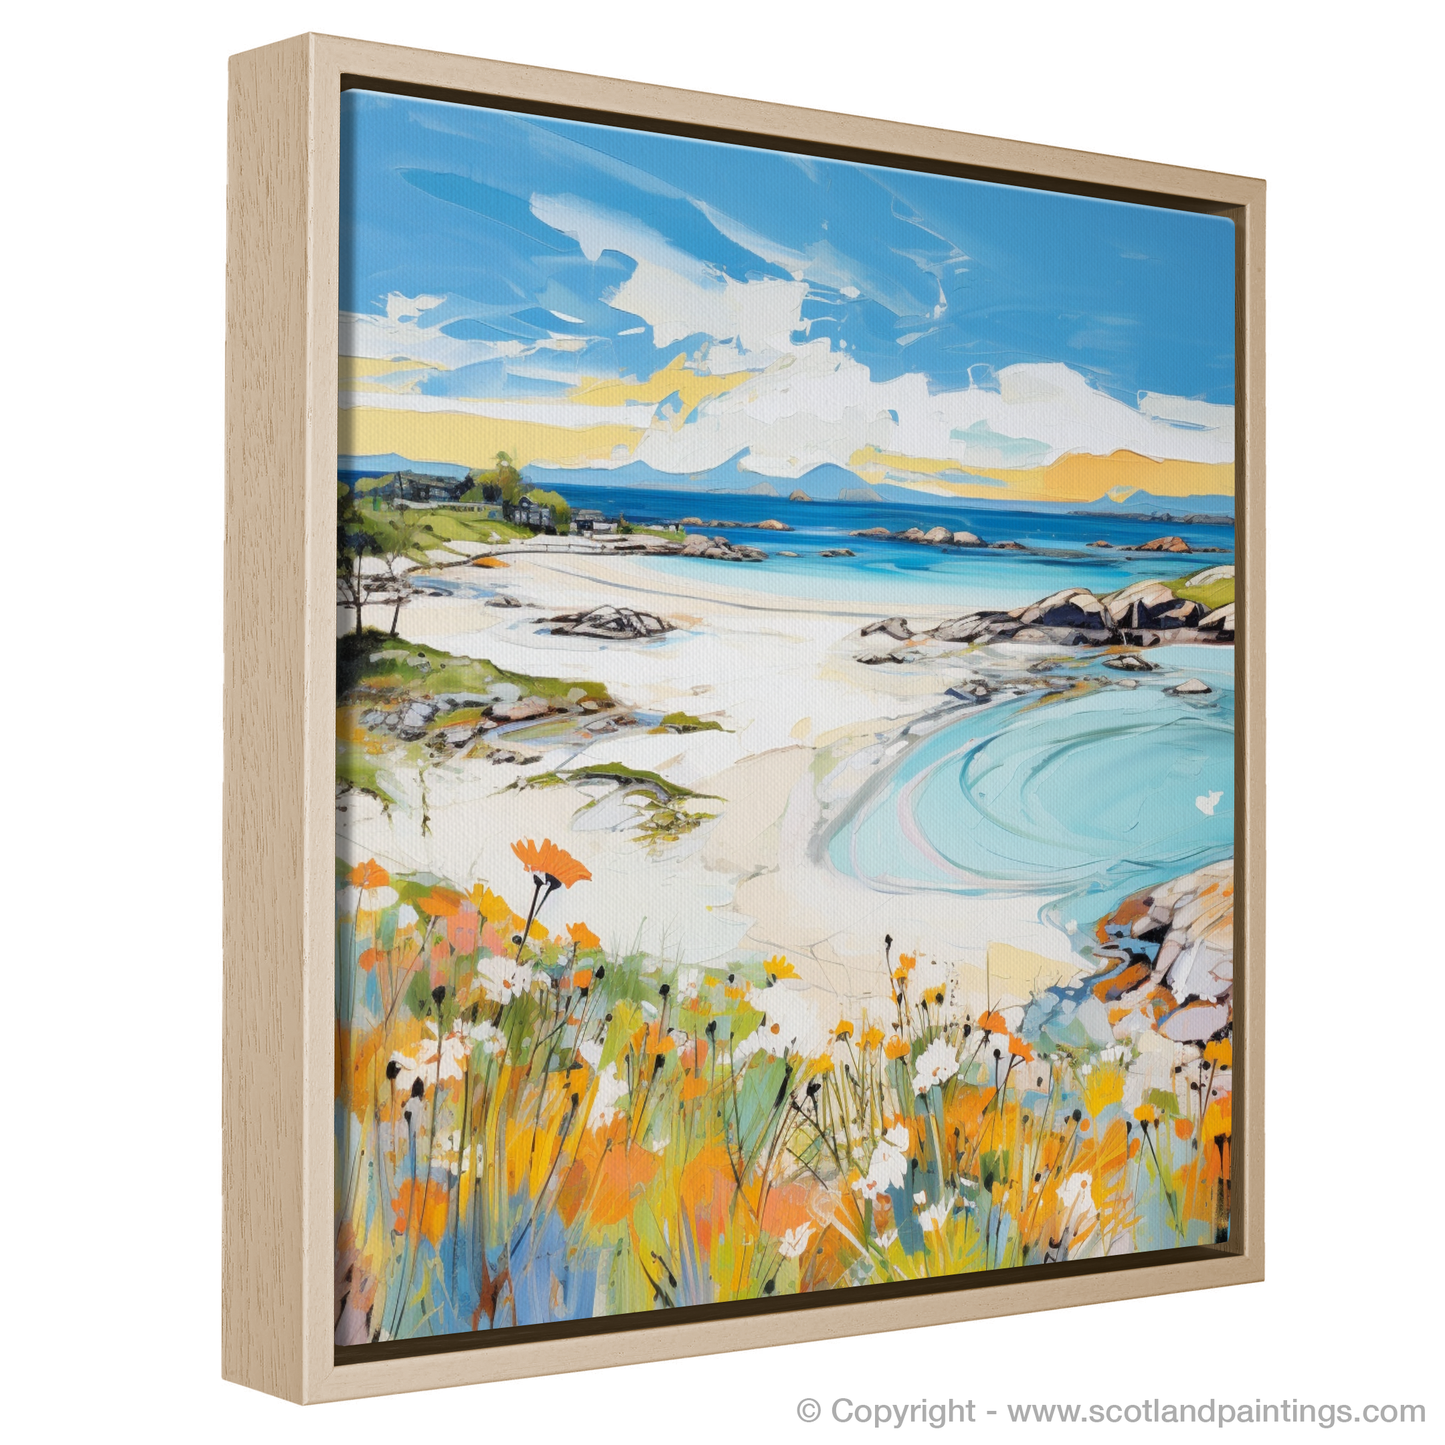 Painting and Art Print of Arisaig Beach, Arisaig in summer entitled "Summer Serenade at Arisaig Beach".